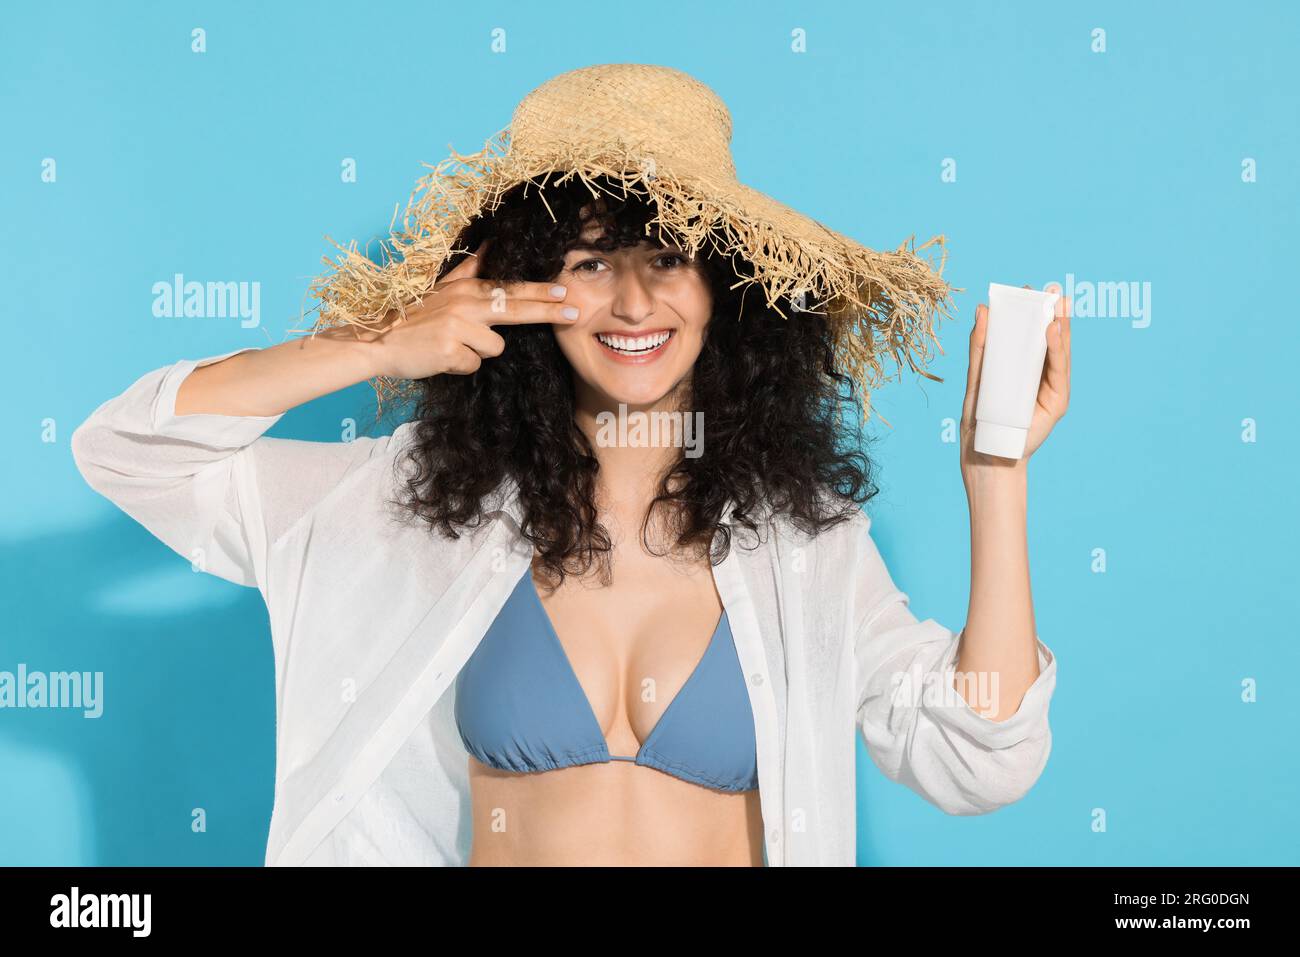 Belle jeune femme dans le chapeau de paille avec tube de crème solaire sur fond bleu clair Banque D'Images